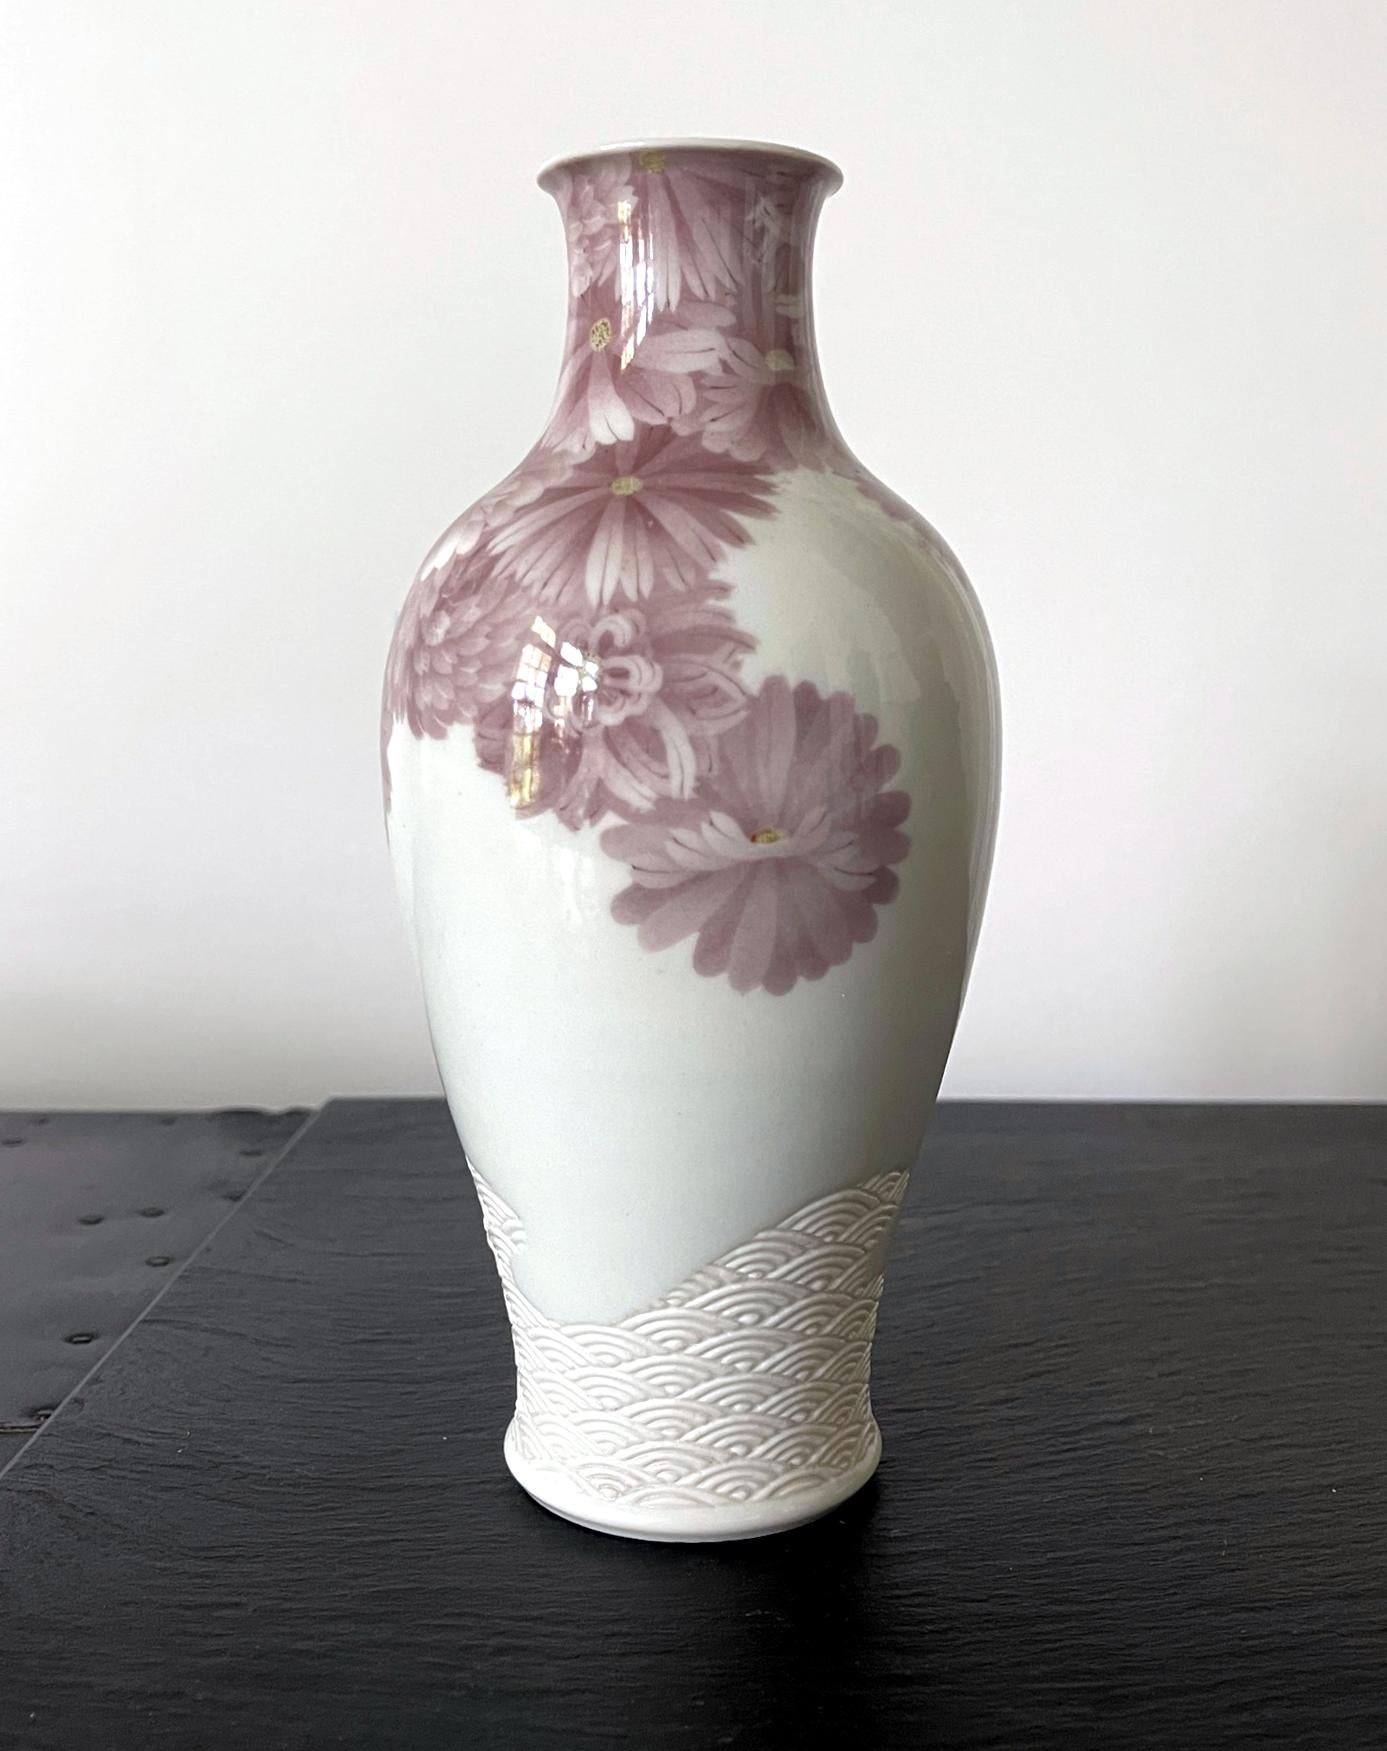 Un vase délicat et rare en céramique japonaise par l'important potier impérial Meiji Makuzu Kozan (1842-1916) vers 1887-1910. Datée de sa phase sous glaçure postérieure à 1887, après qu'il eut réussi à maîtriser les nouvelles couleurs disponibles en